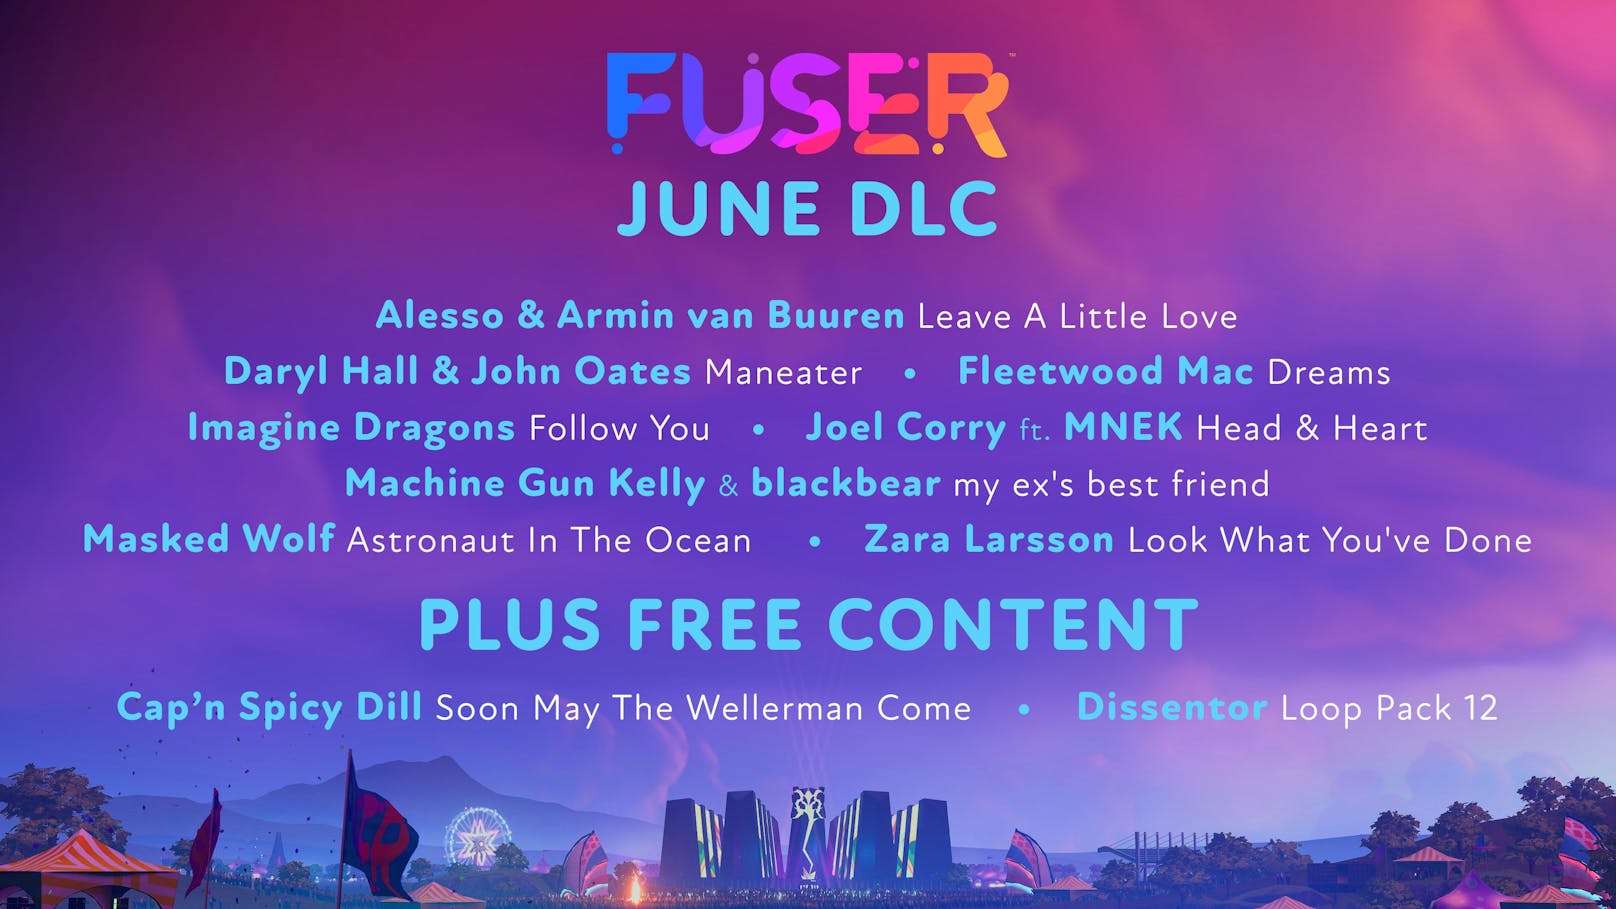 "Fuser" heizt die Sommerbühne mit dem Juni DLC ein.